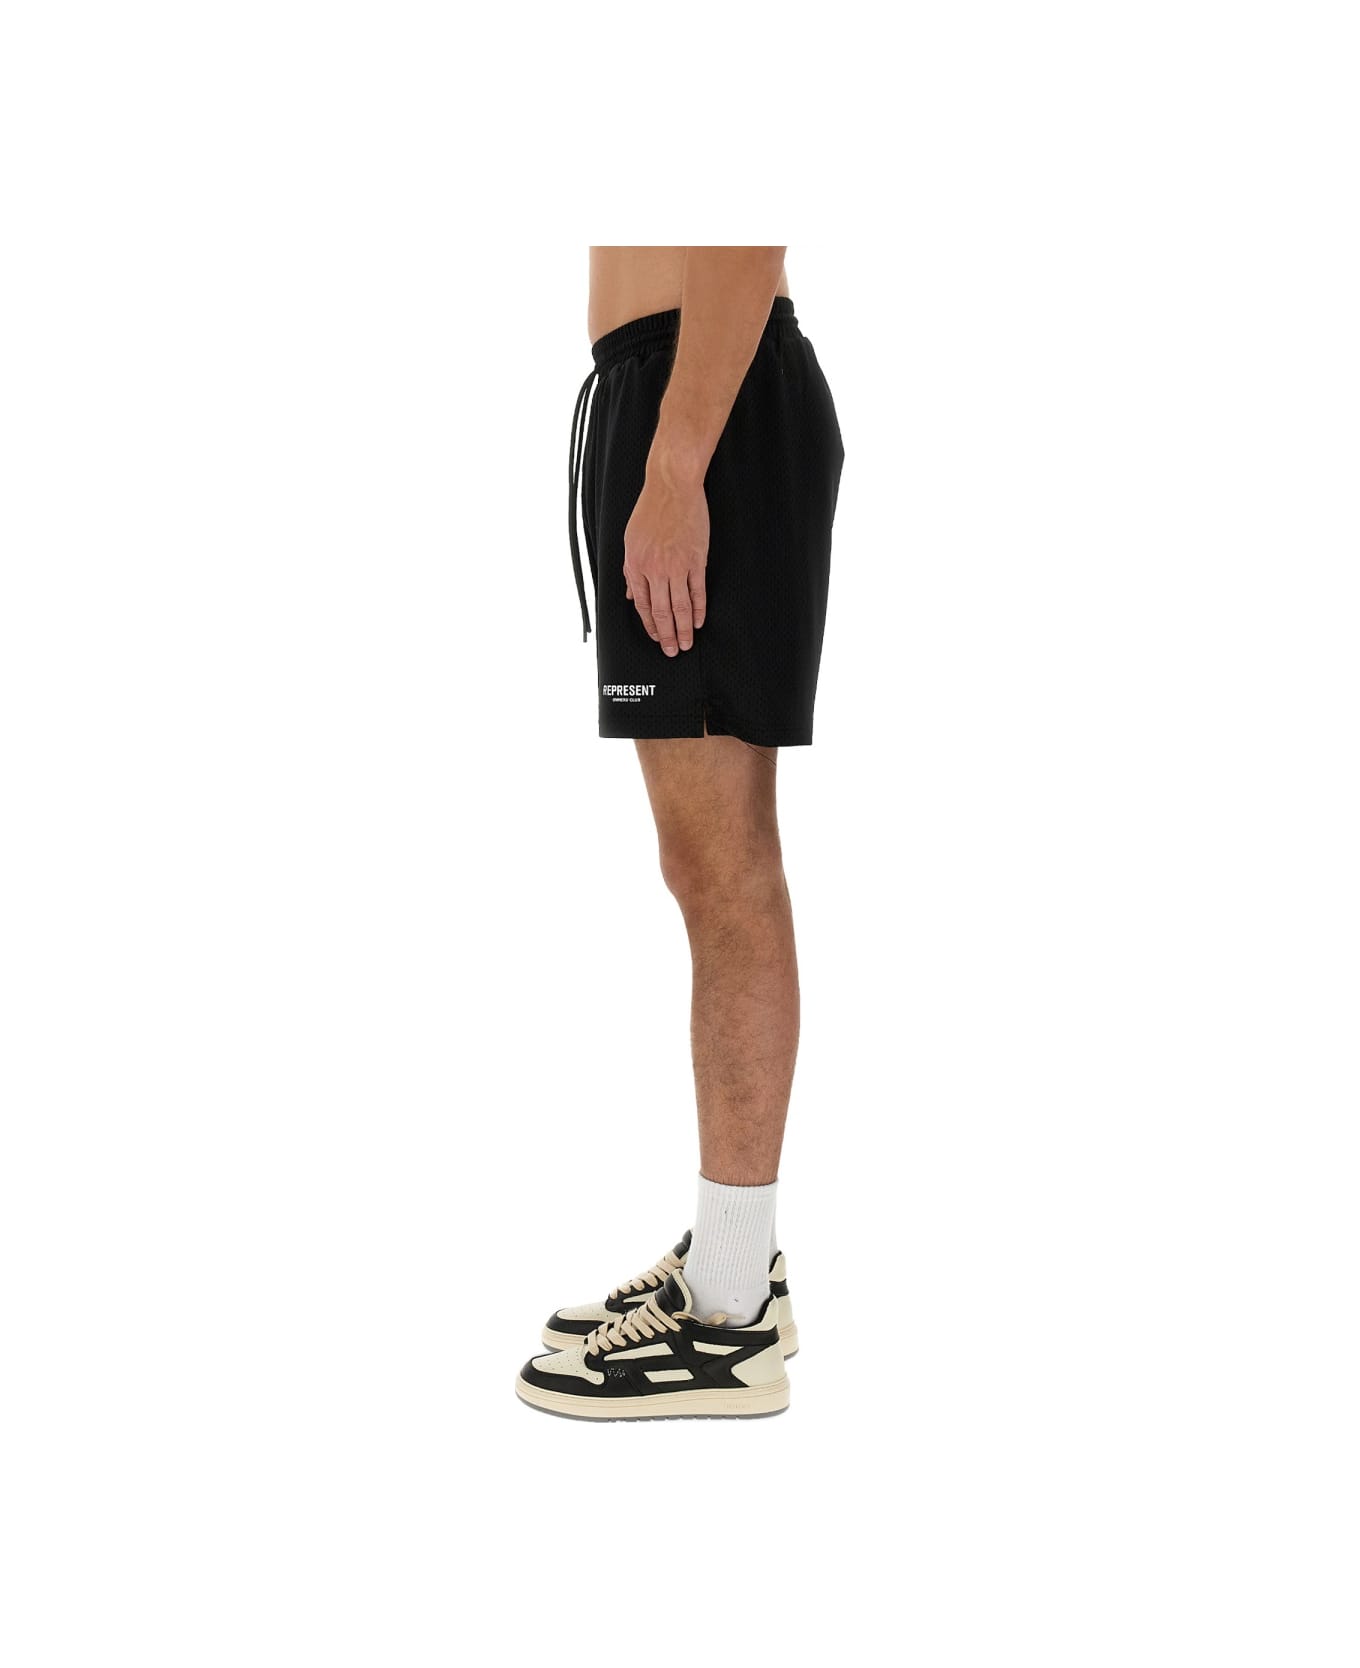 REPRESENT Mesh Bermuda Shorts - BLACK